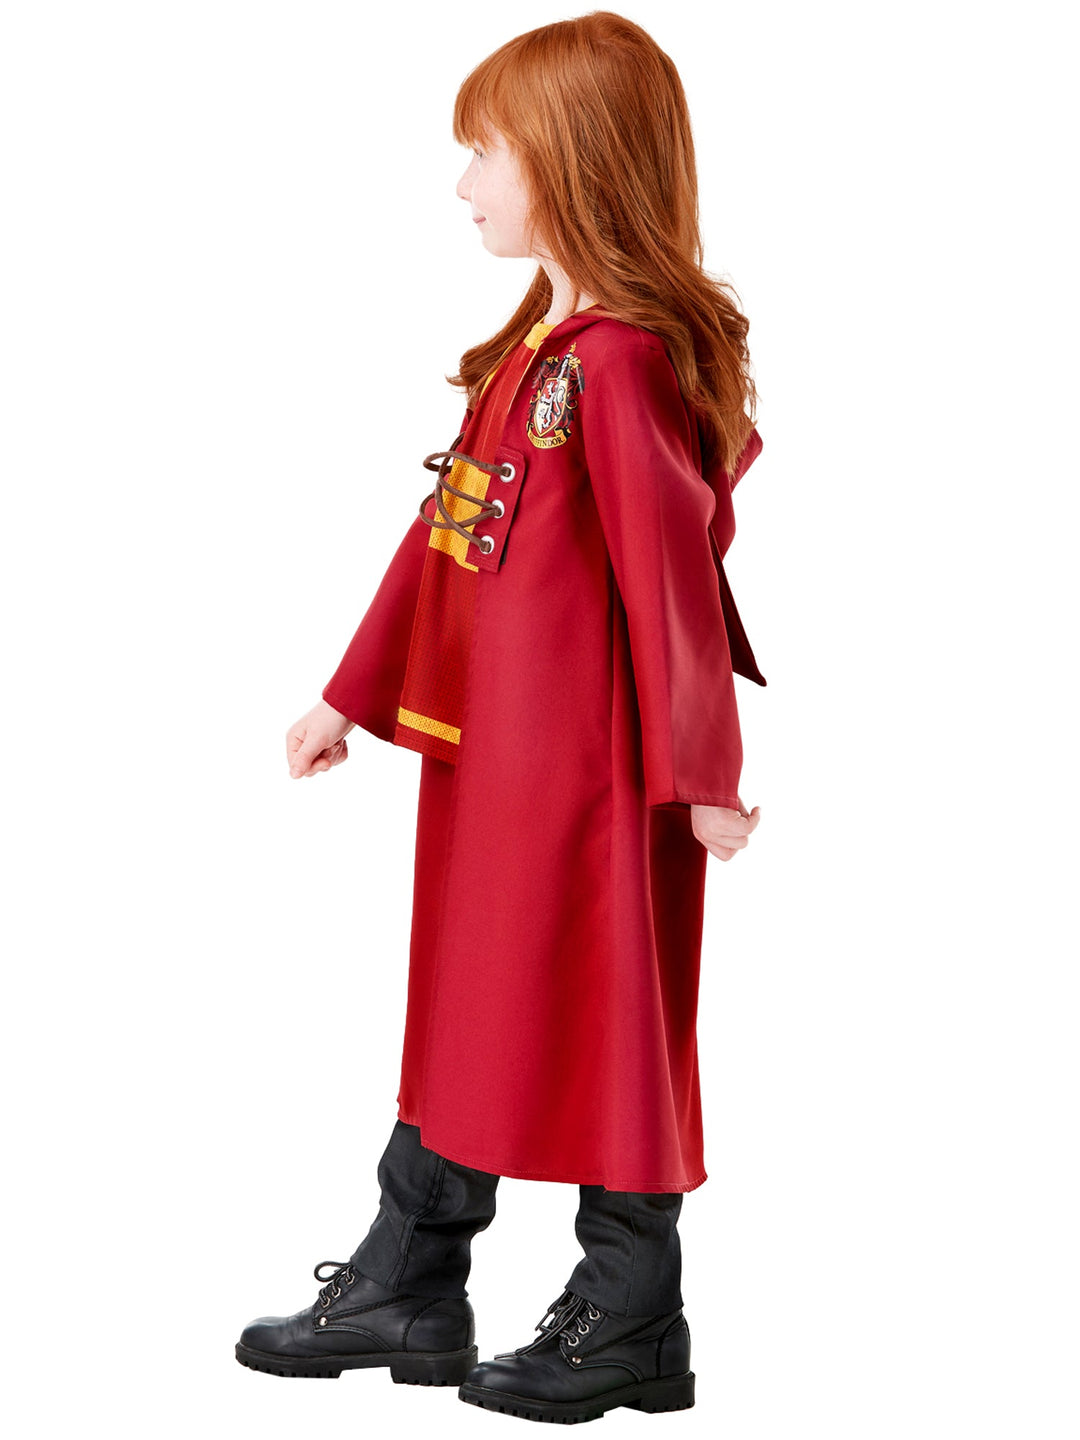 Harry Potter Gryffindor Quidditch Robe Child